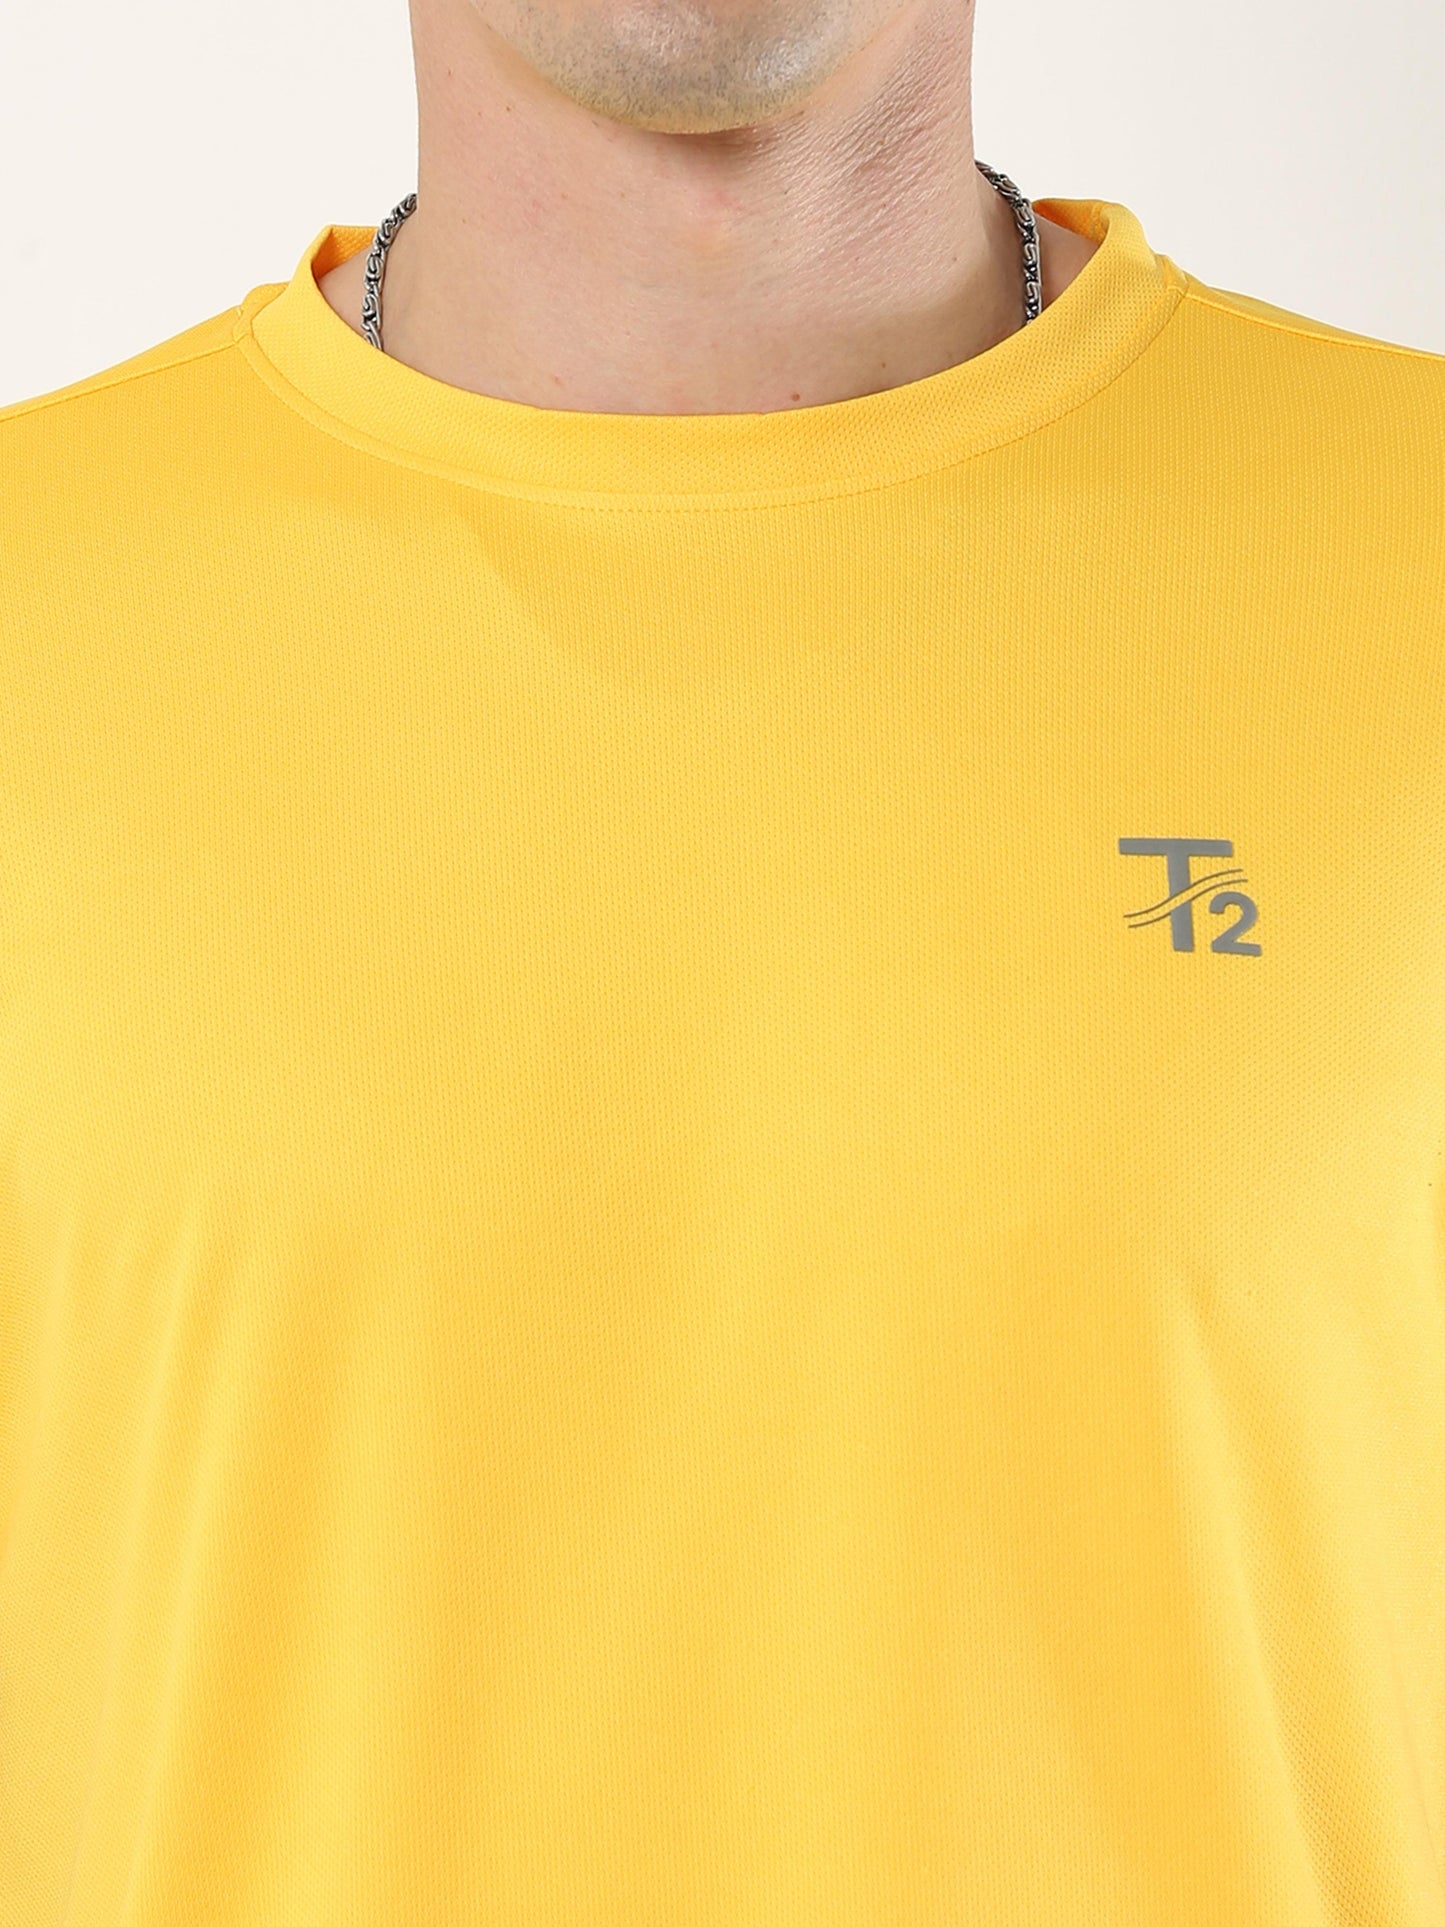 Athleisure Men's Premium T-Shirt - Yellow